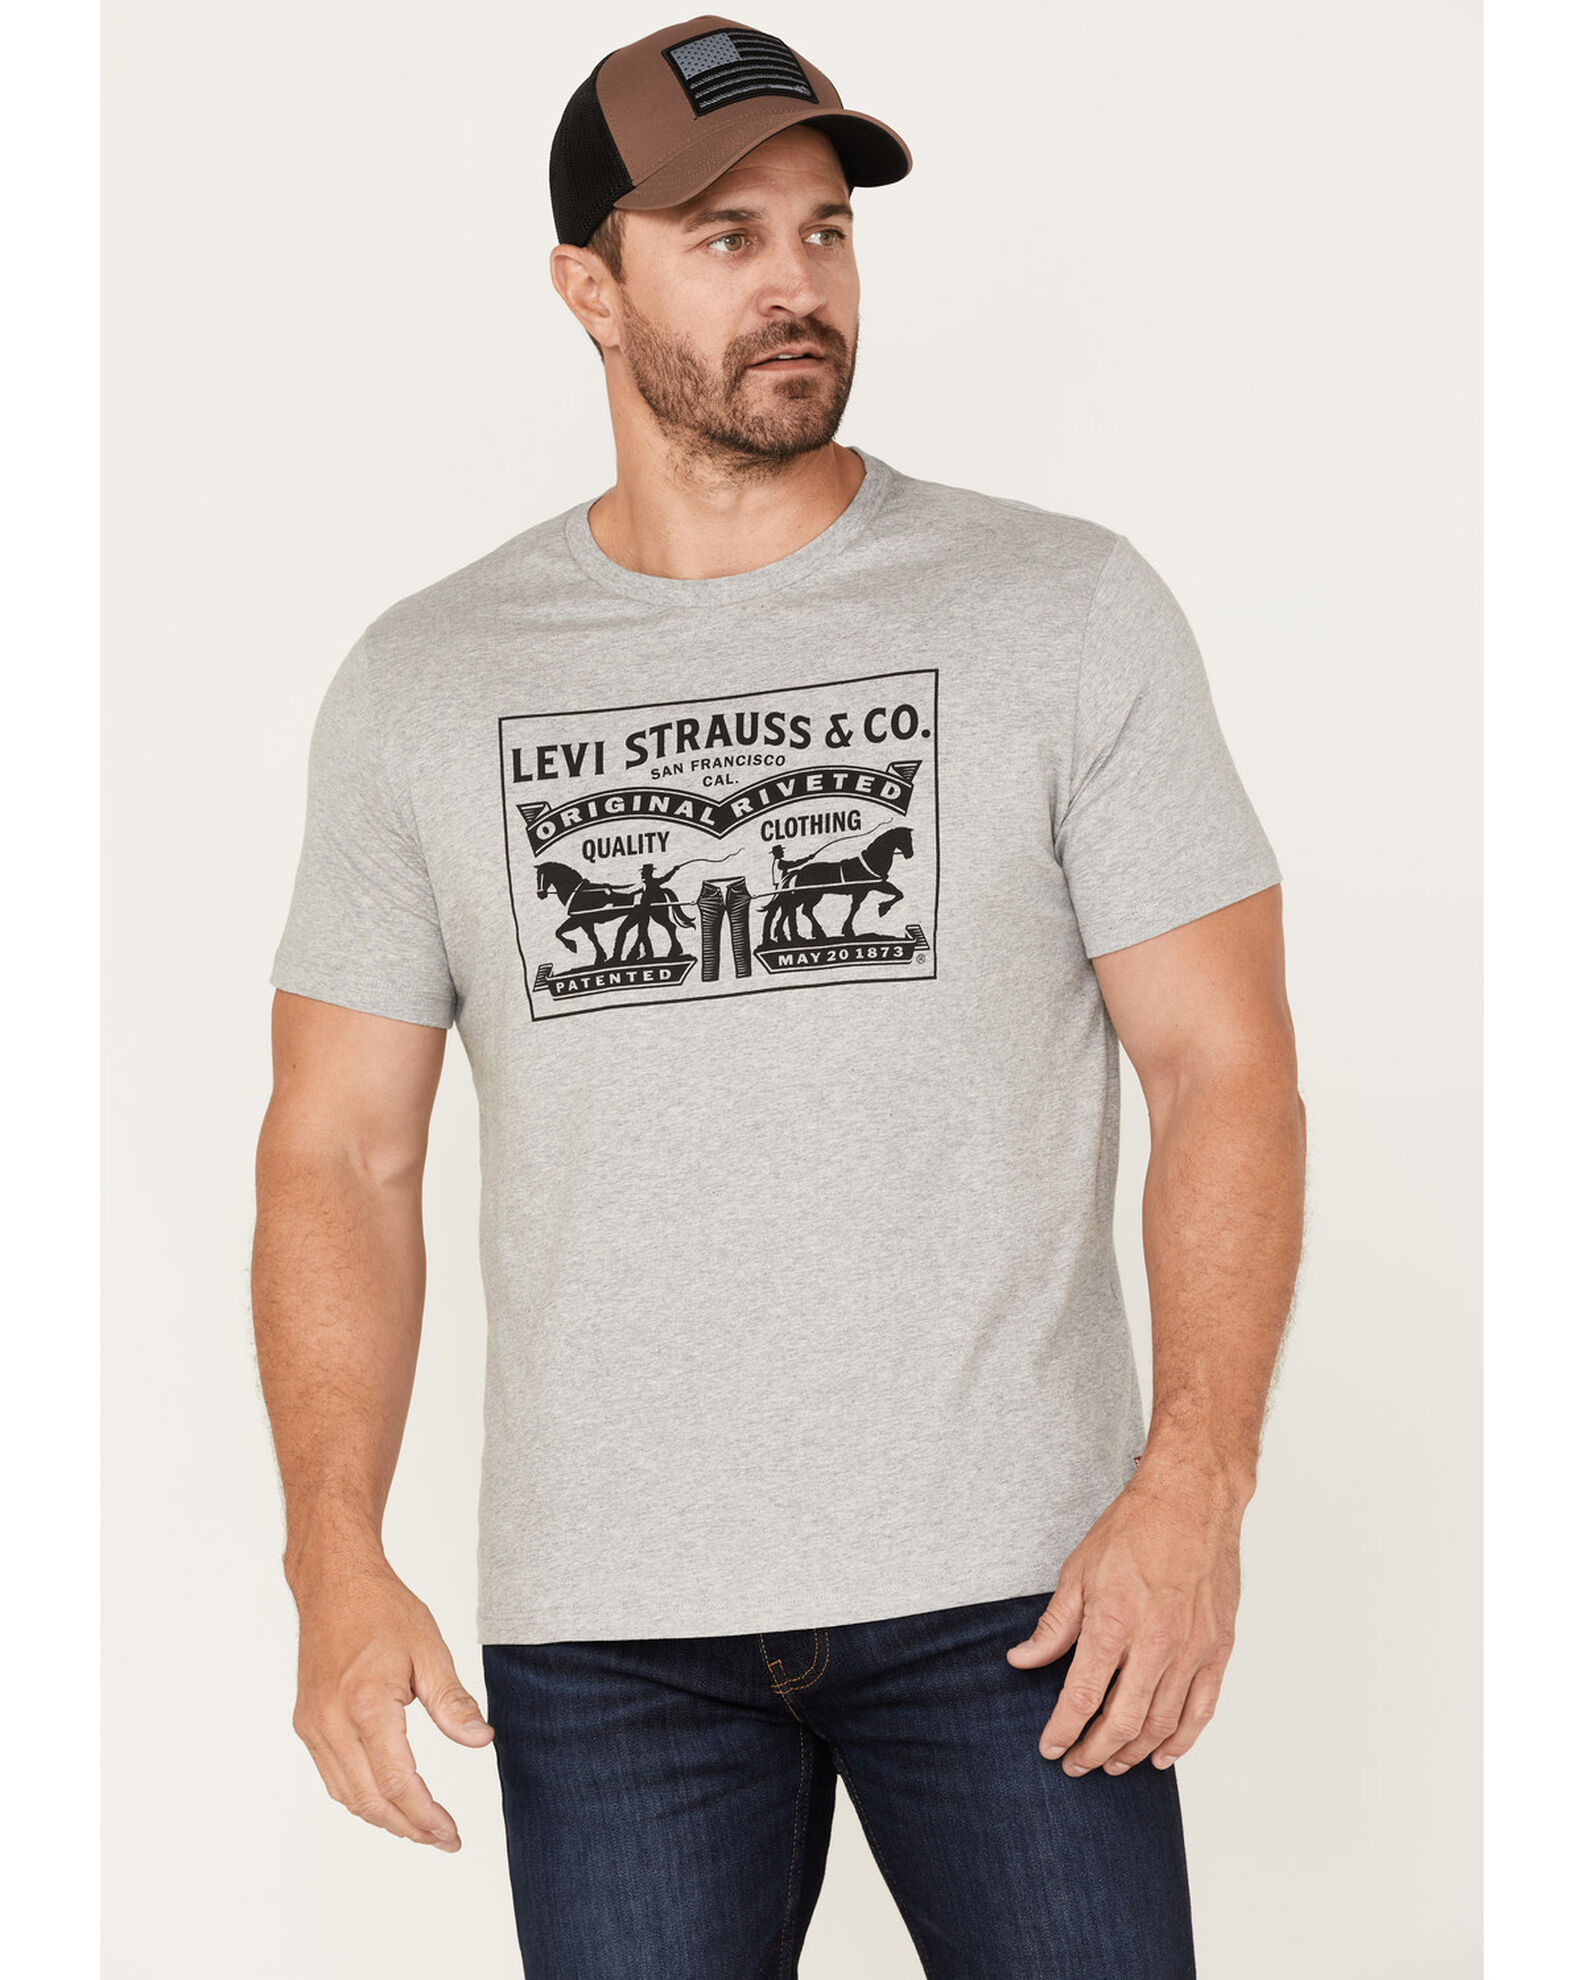 Aannames, aannames. Raad eens Embryo Brig Levi's Men's 2-Horse Logo Graphic T-Shirt | Boot Barn